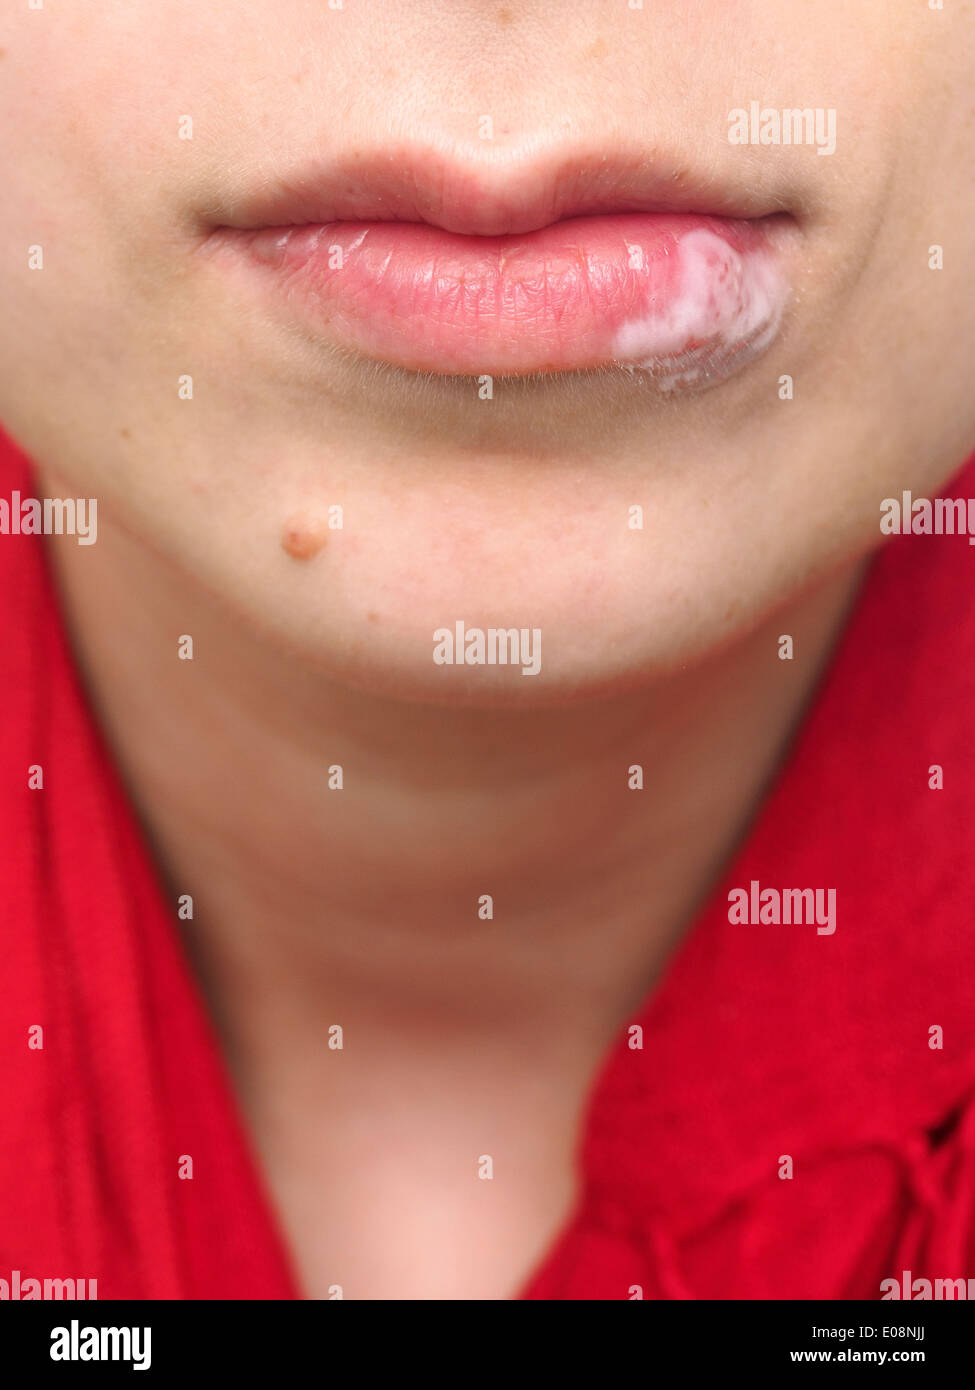 Jeune femme avec de l'huile sur la lèvre à cause de l'herpès simplex Banque D'Images